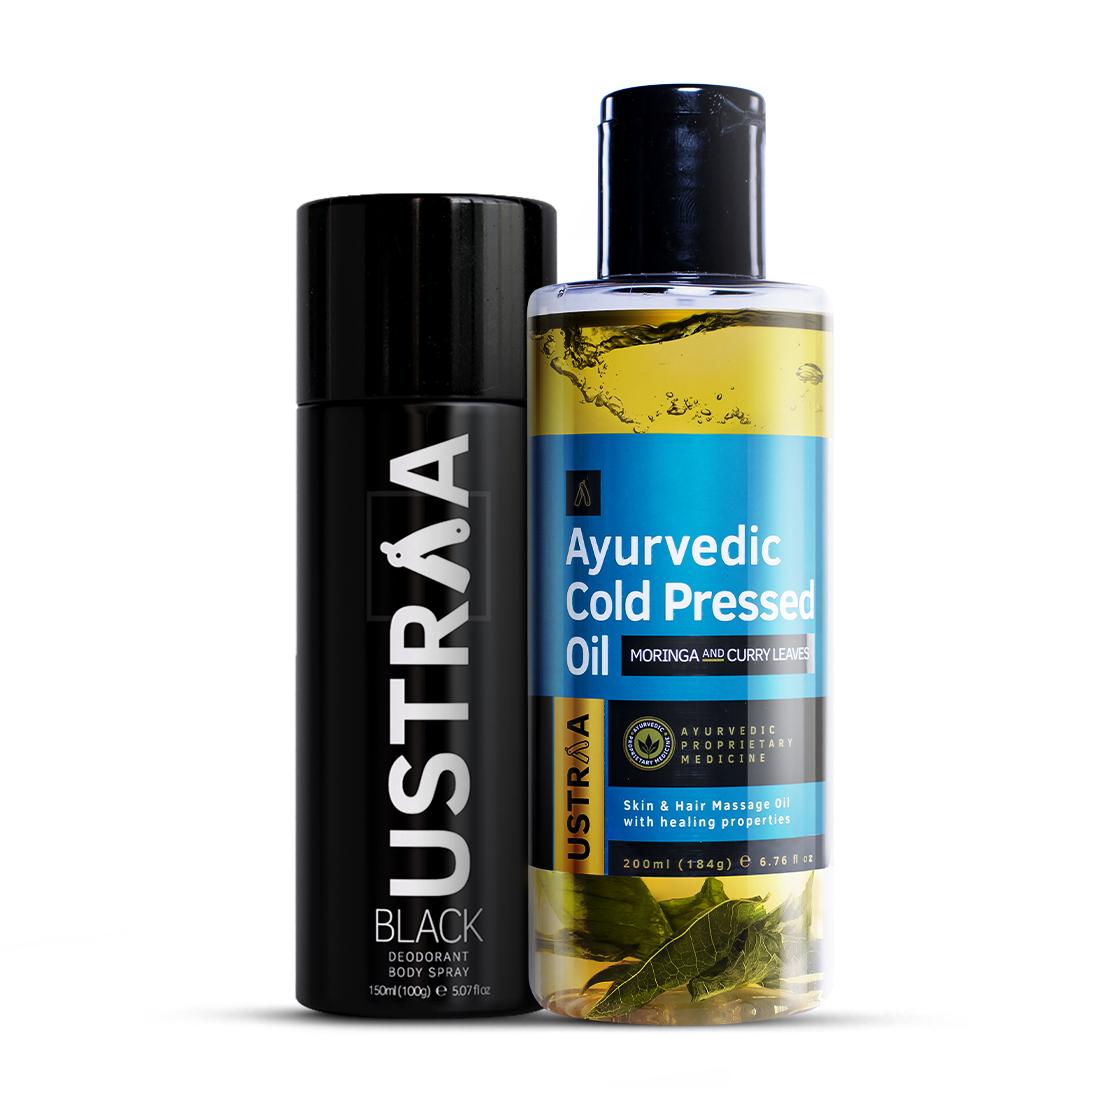 Ayurvedic Cold Pressed Oil & BLACK Deodorant Body Spray Combo